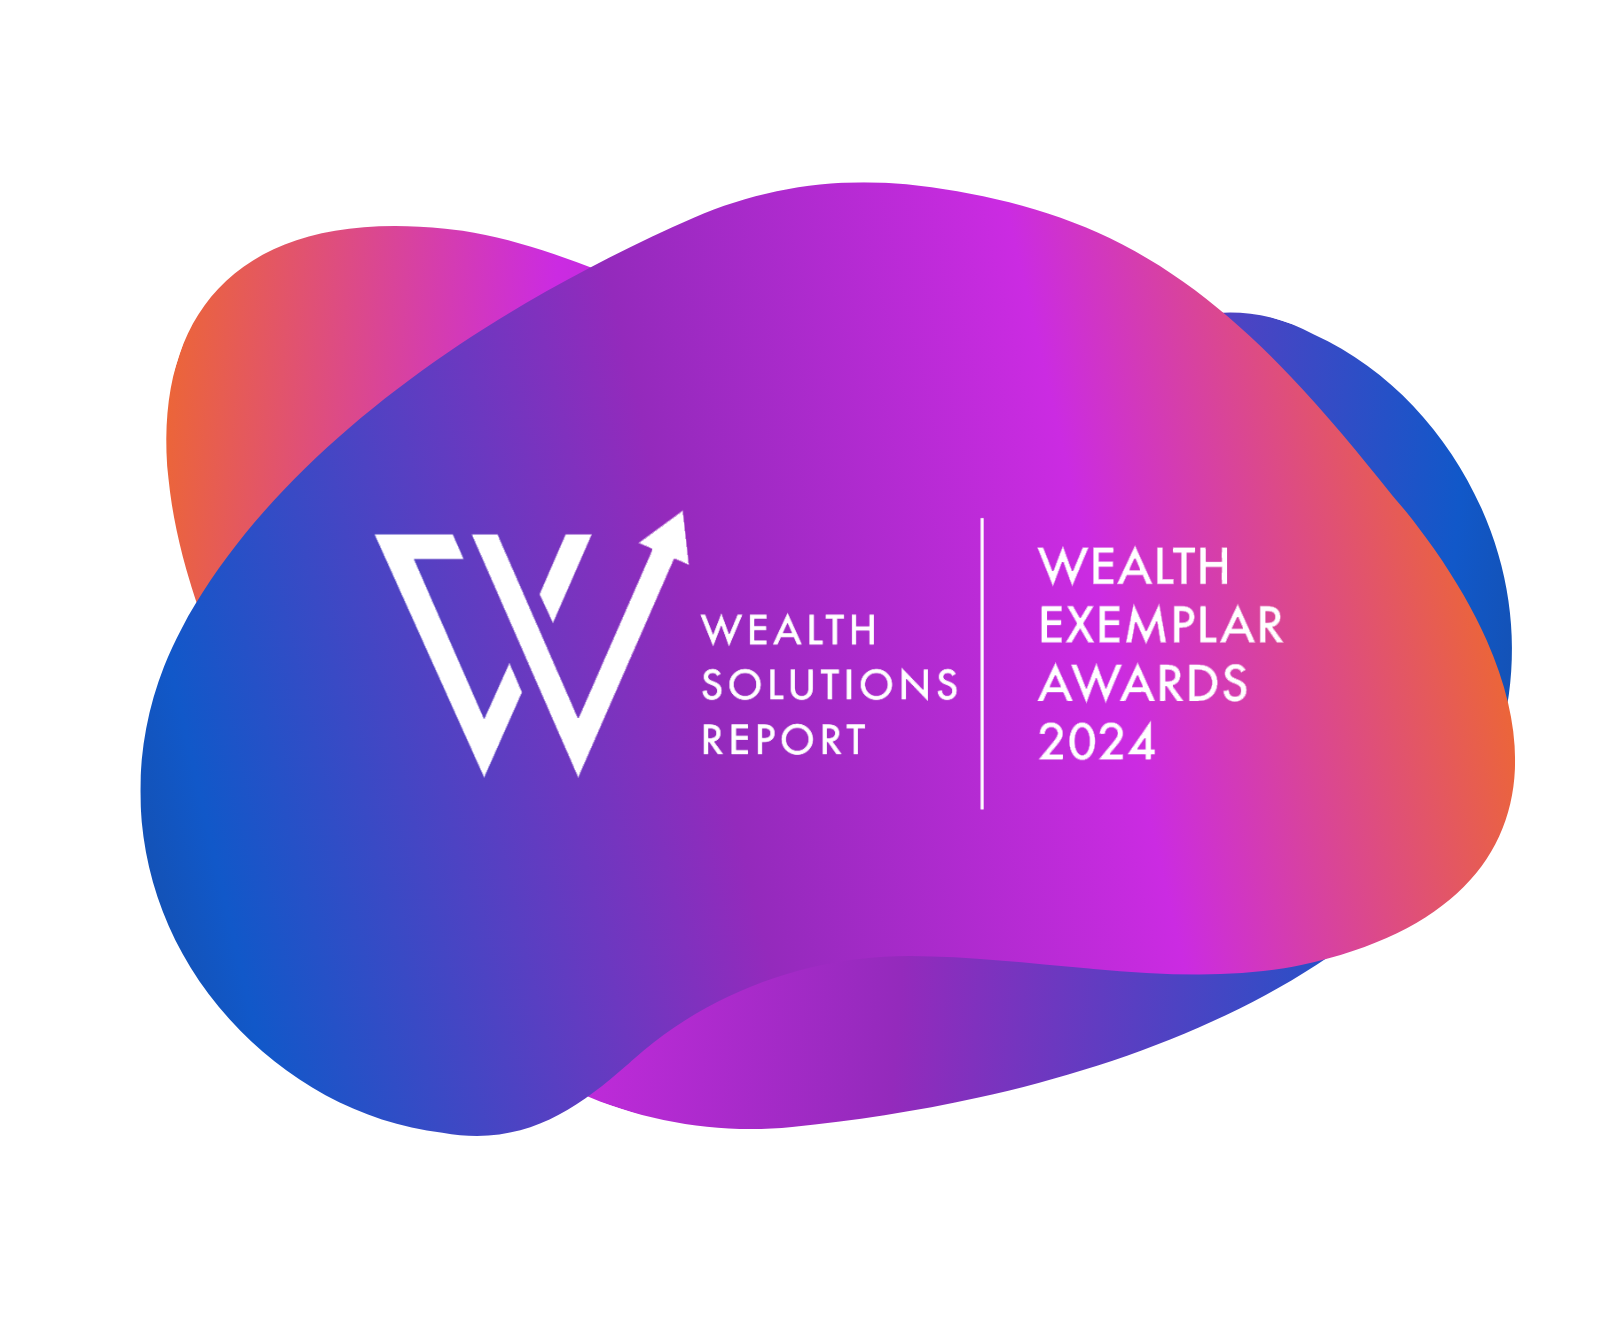 Wealth Solutions Report, Wealth Exemplar Awards 2024